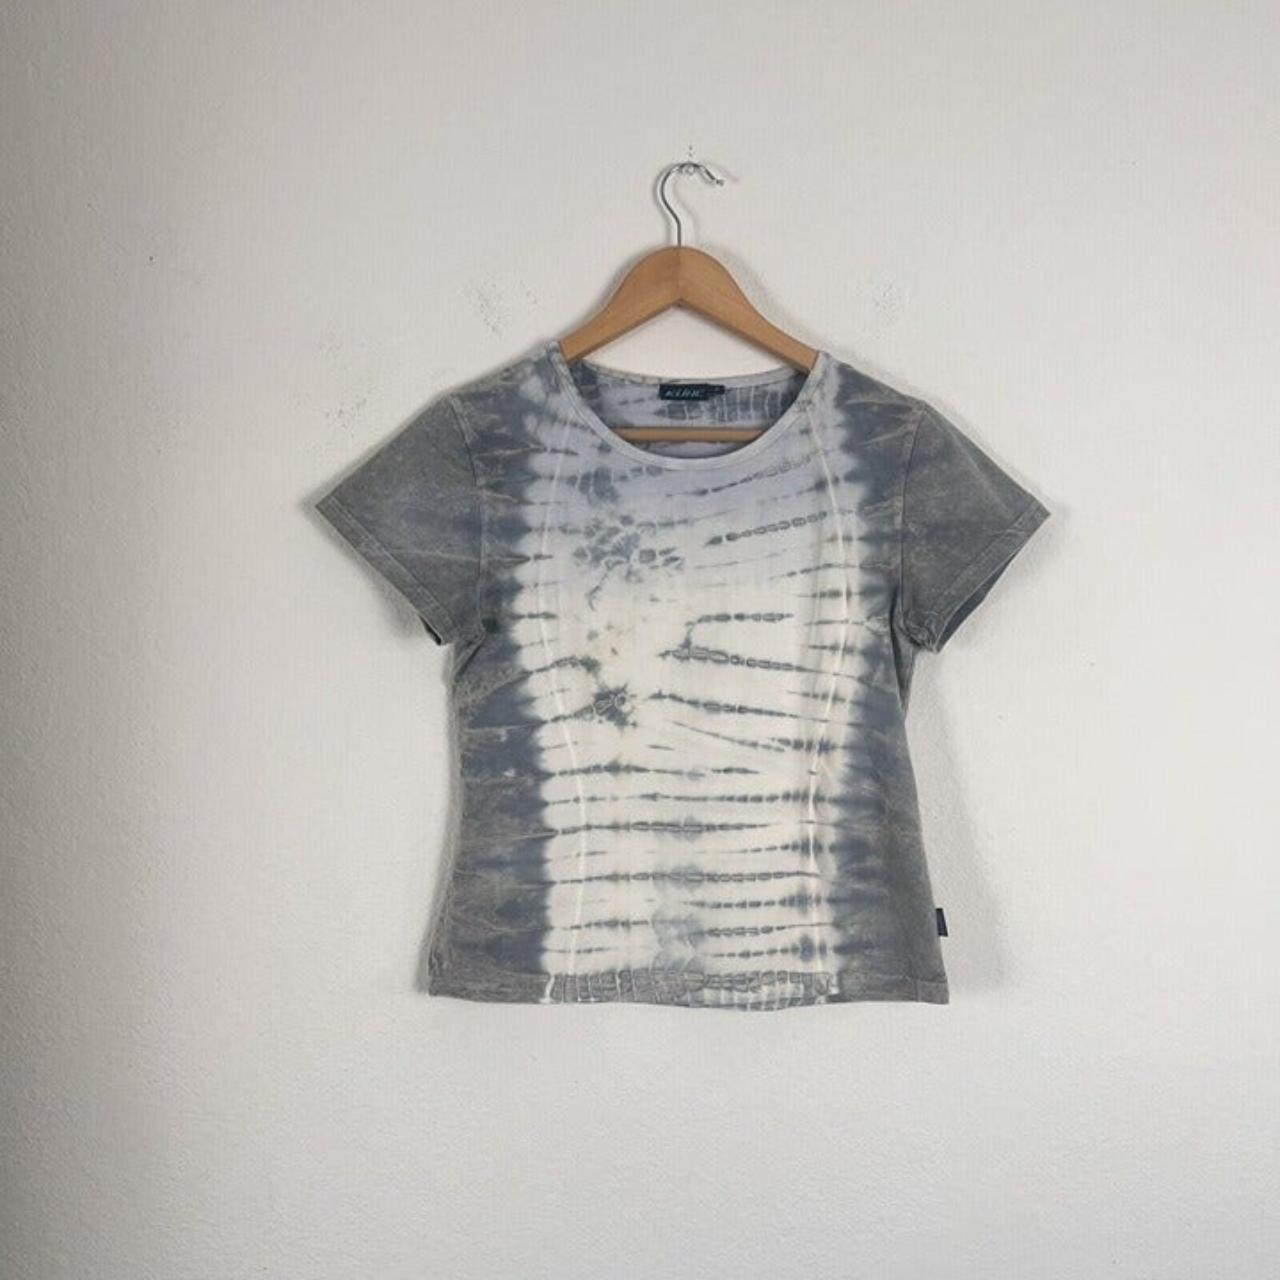 Kuhl Womens Short Sleeve Tee Shirt Knit Gray & Blue - Depop